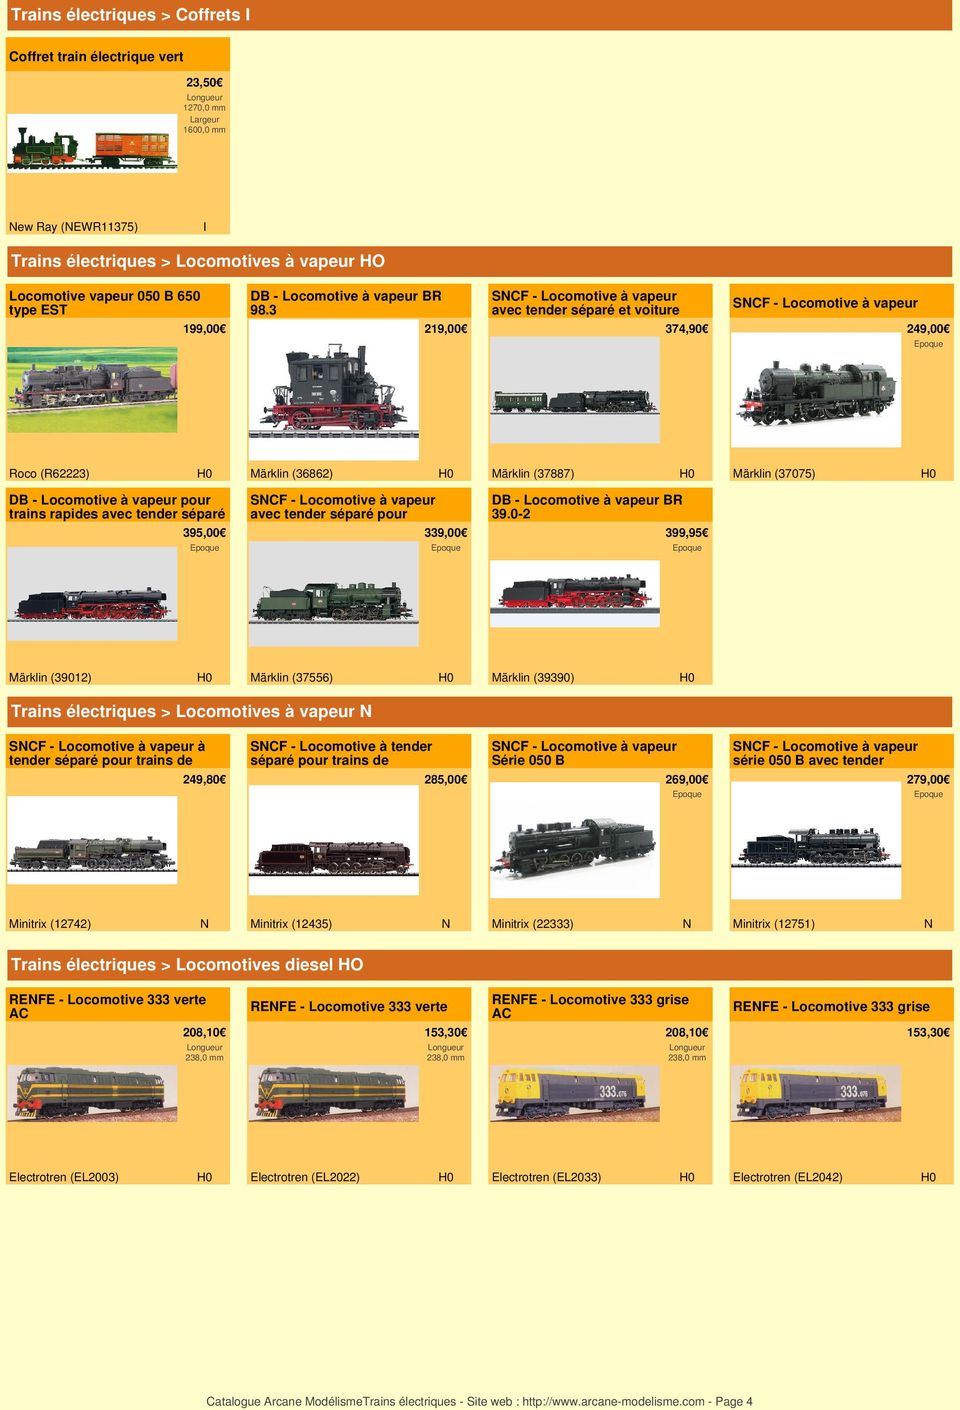 3 SCF - Locomotive à vapeur avec tender séparé et voiture SCF - Locomotive à vapeur 199,00 219,00 374,90 249,00 Roco (R62223) Märklin (36862) Märklin (37887) Märklin (37075) DB - Locomotive à vapeur